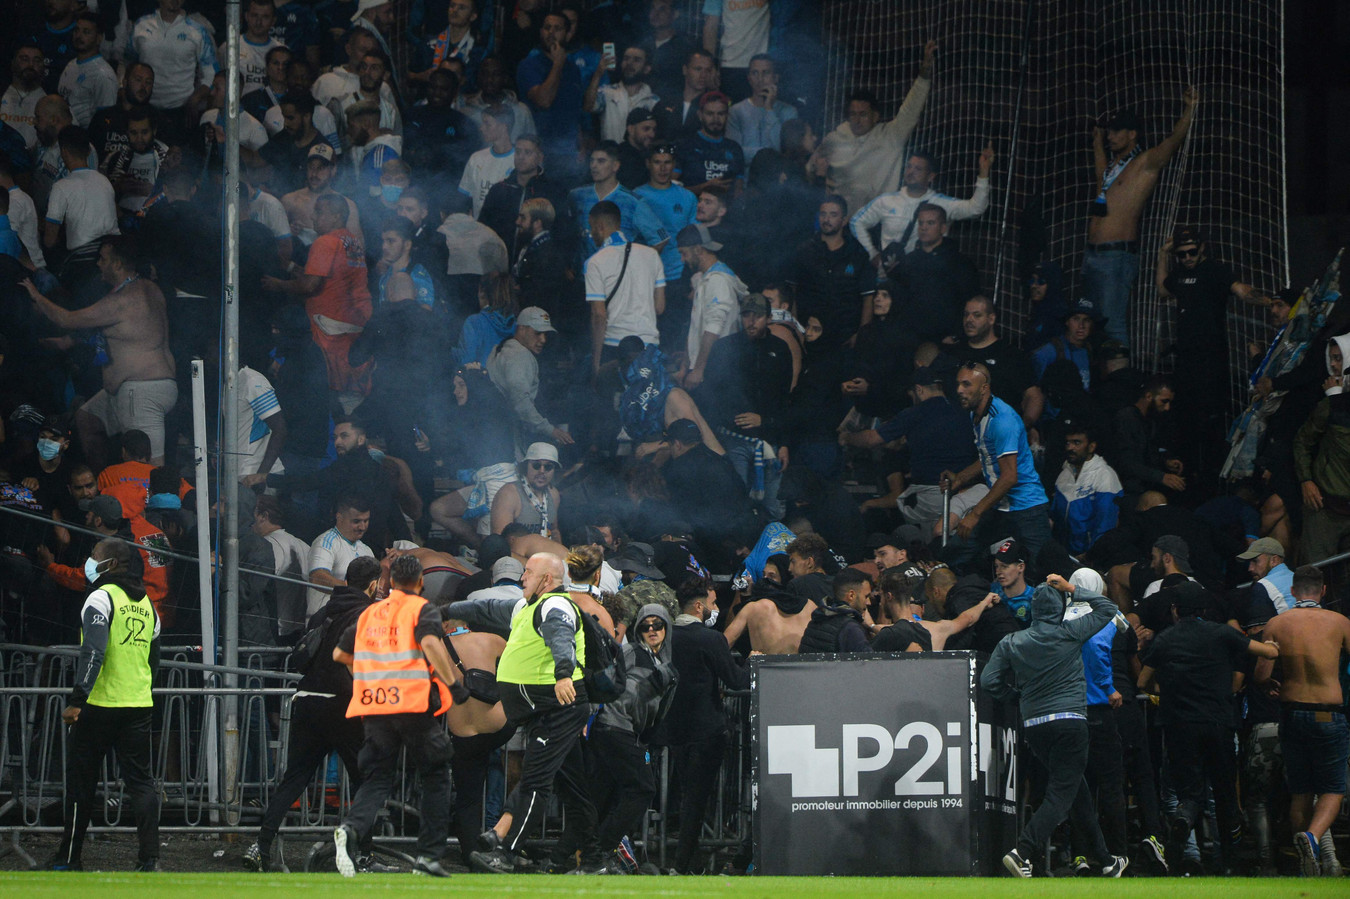 De supporters van Marseille zorgden gisteravond voor de nodige onrust.